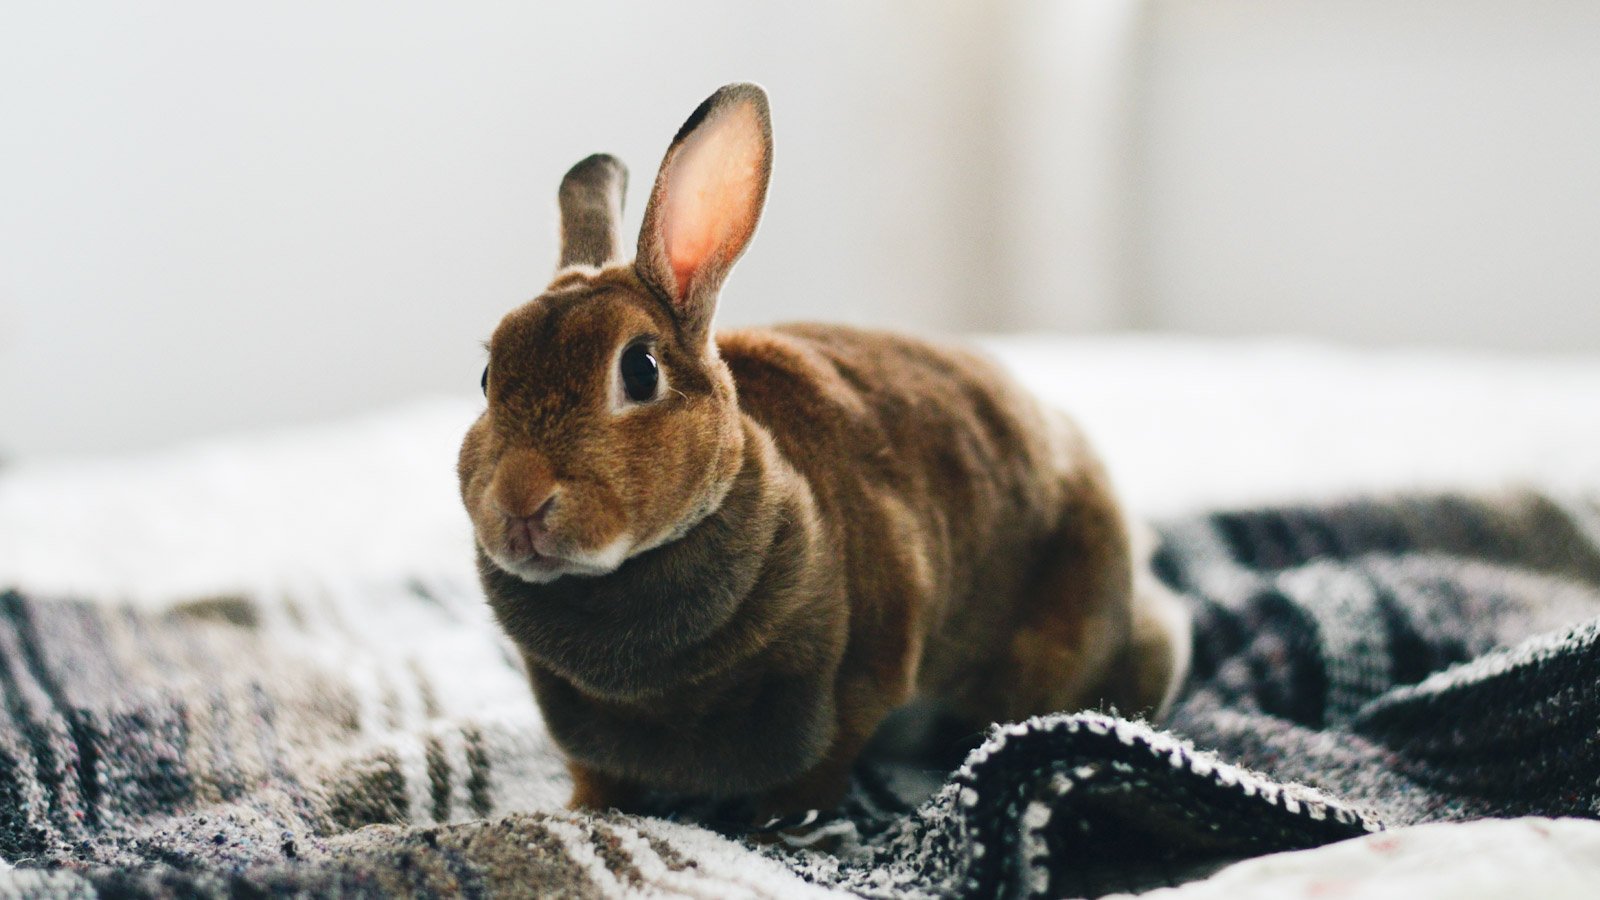 Как ухаживать за кроликами дома, и чем они могут быть опасны для человека